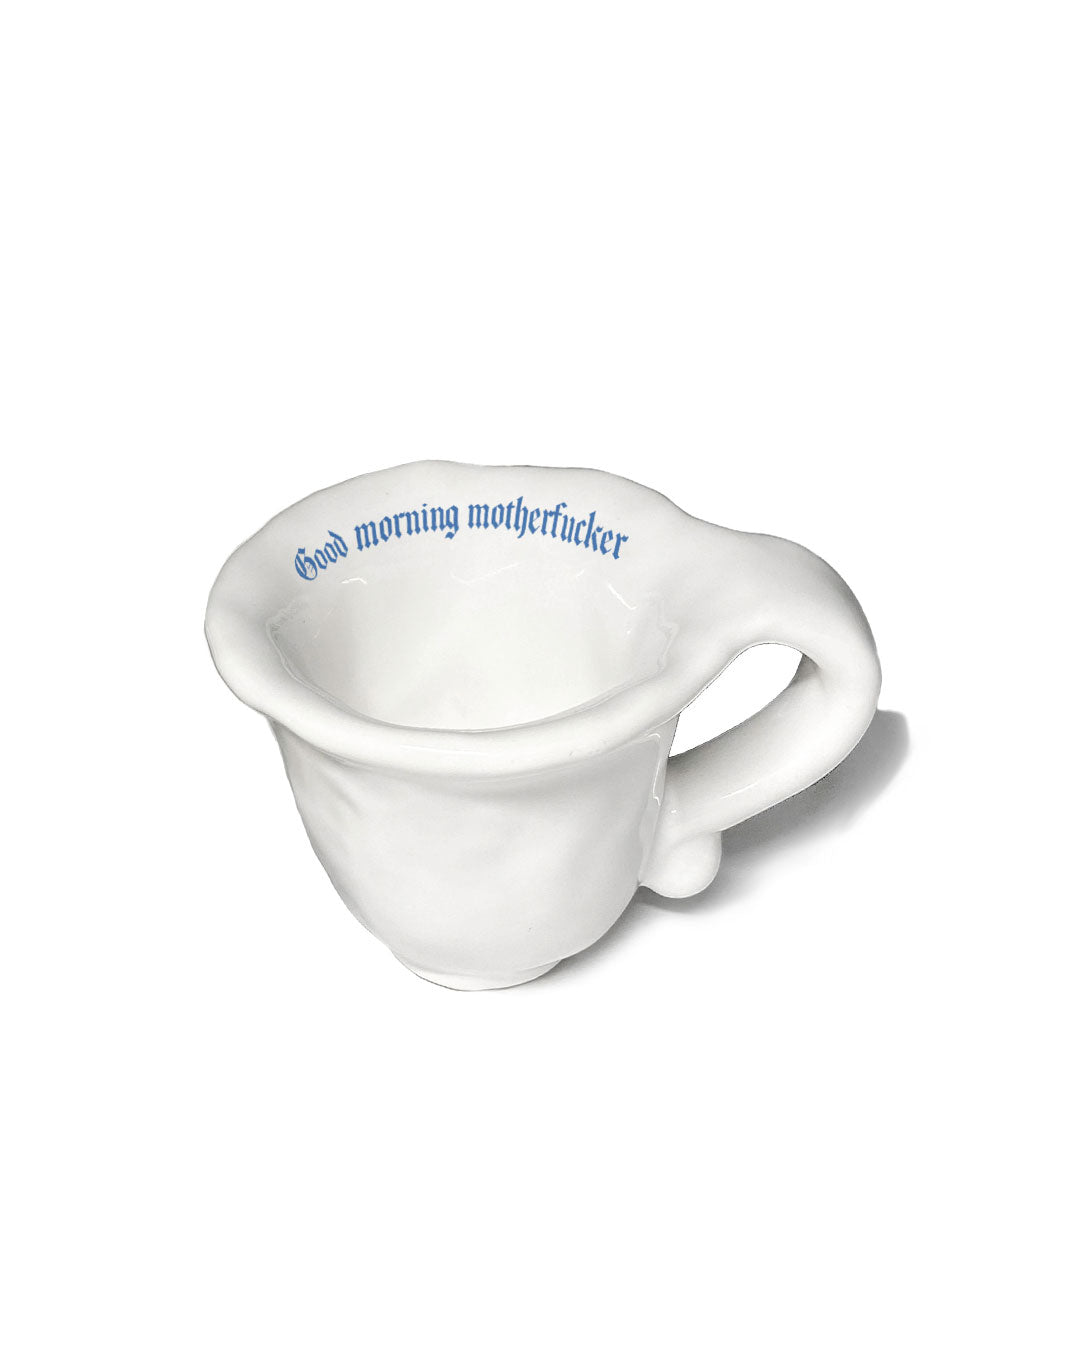 https://ta-daan.com/cdn/shop/files/incartato_espresso-cups_1c.jpg?v=1692614381&width=1080